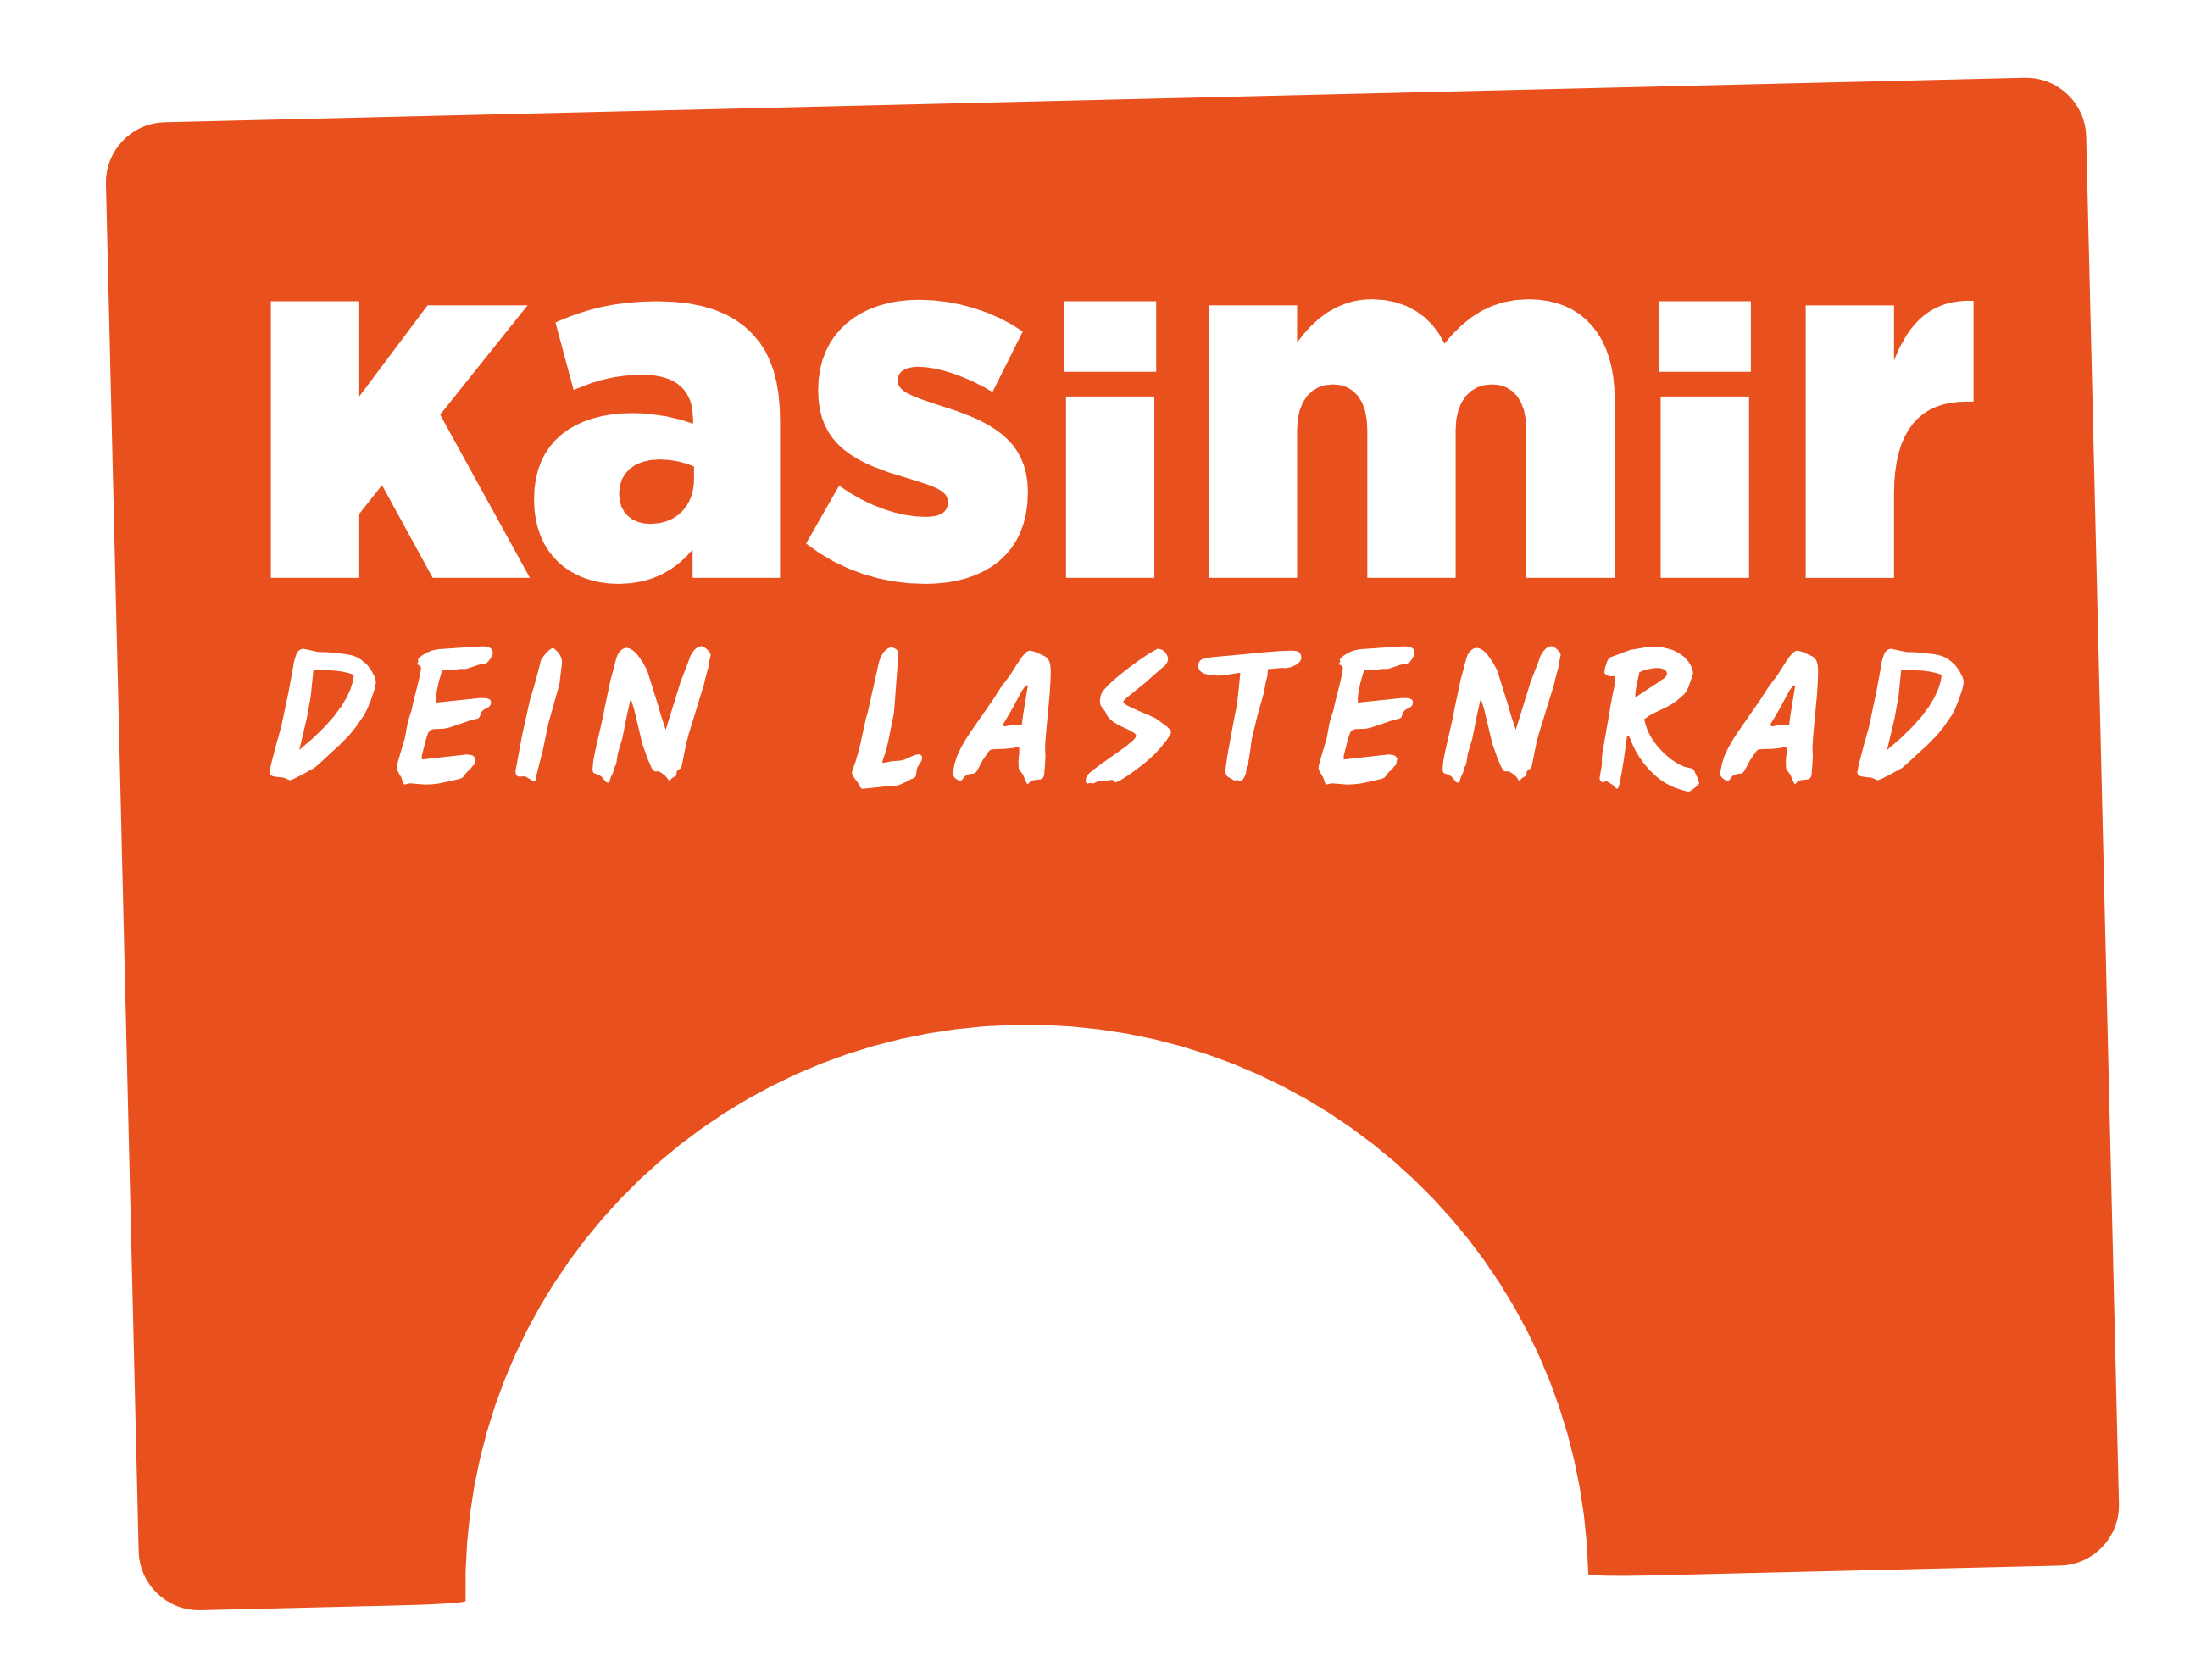 Logo Kasimir.png